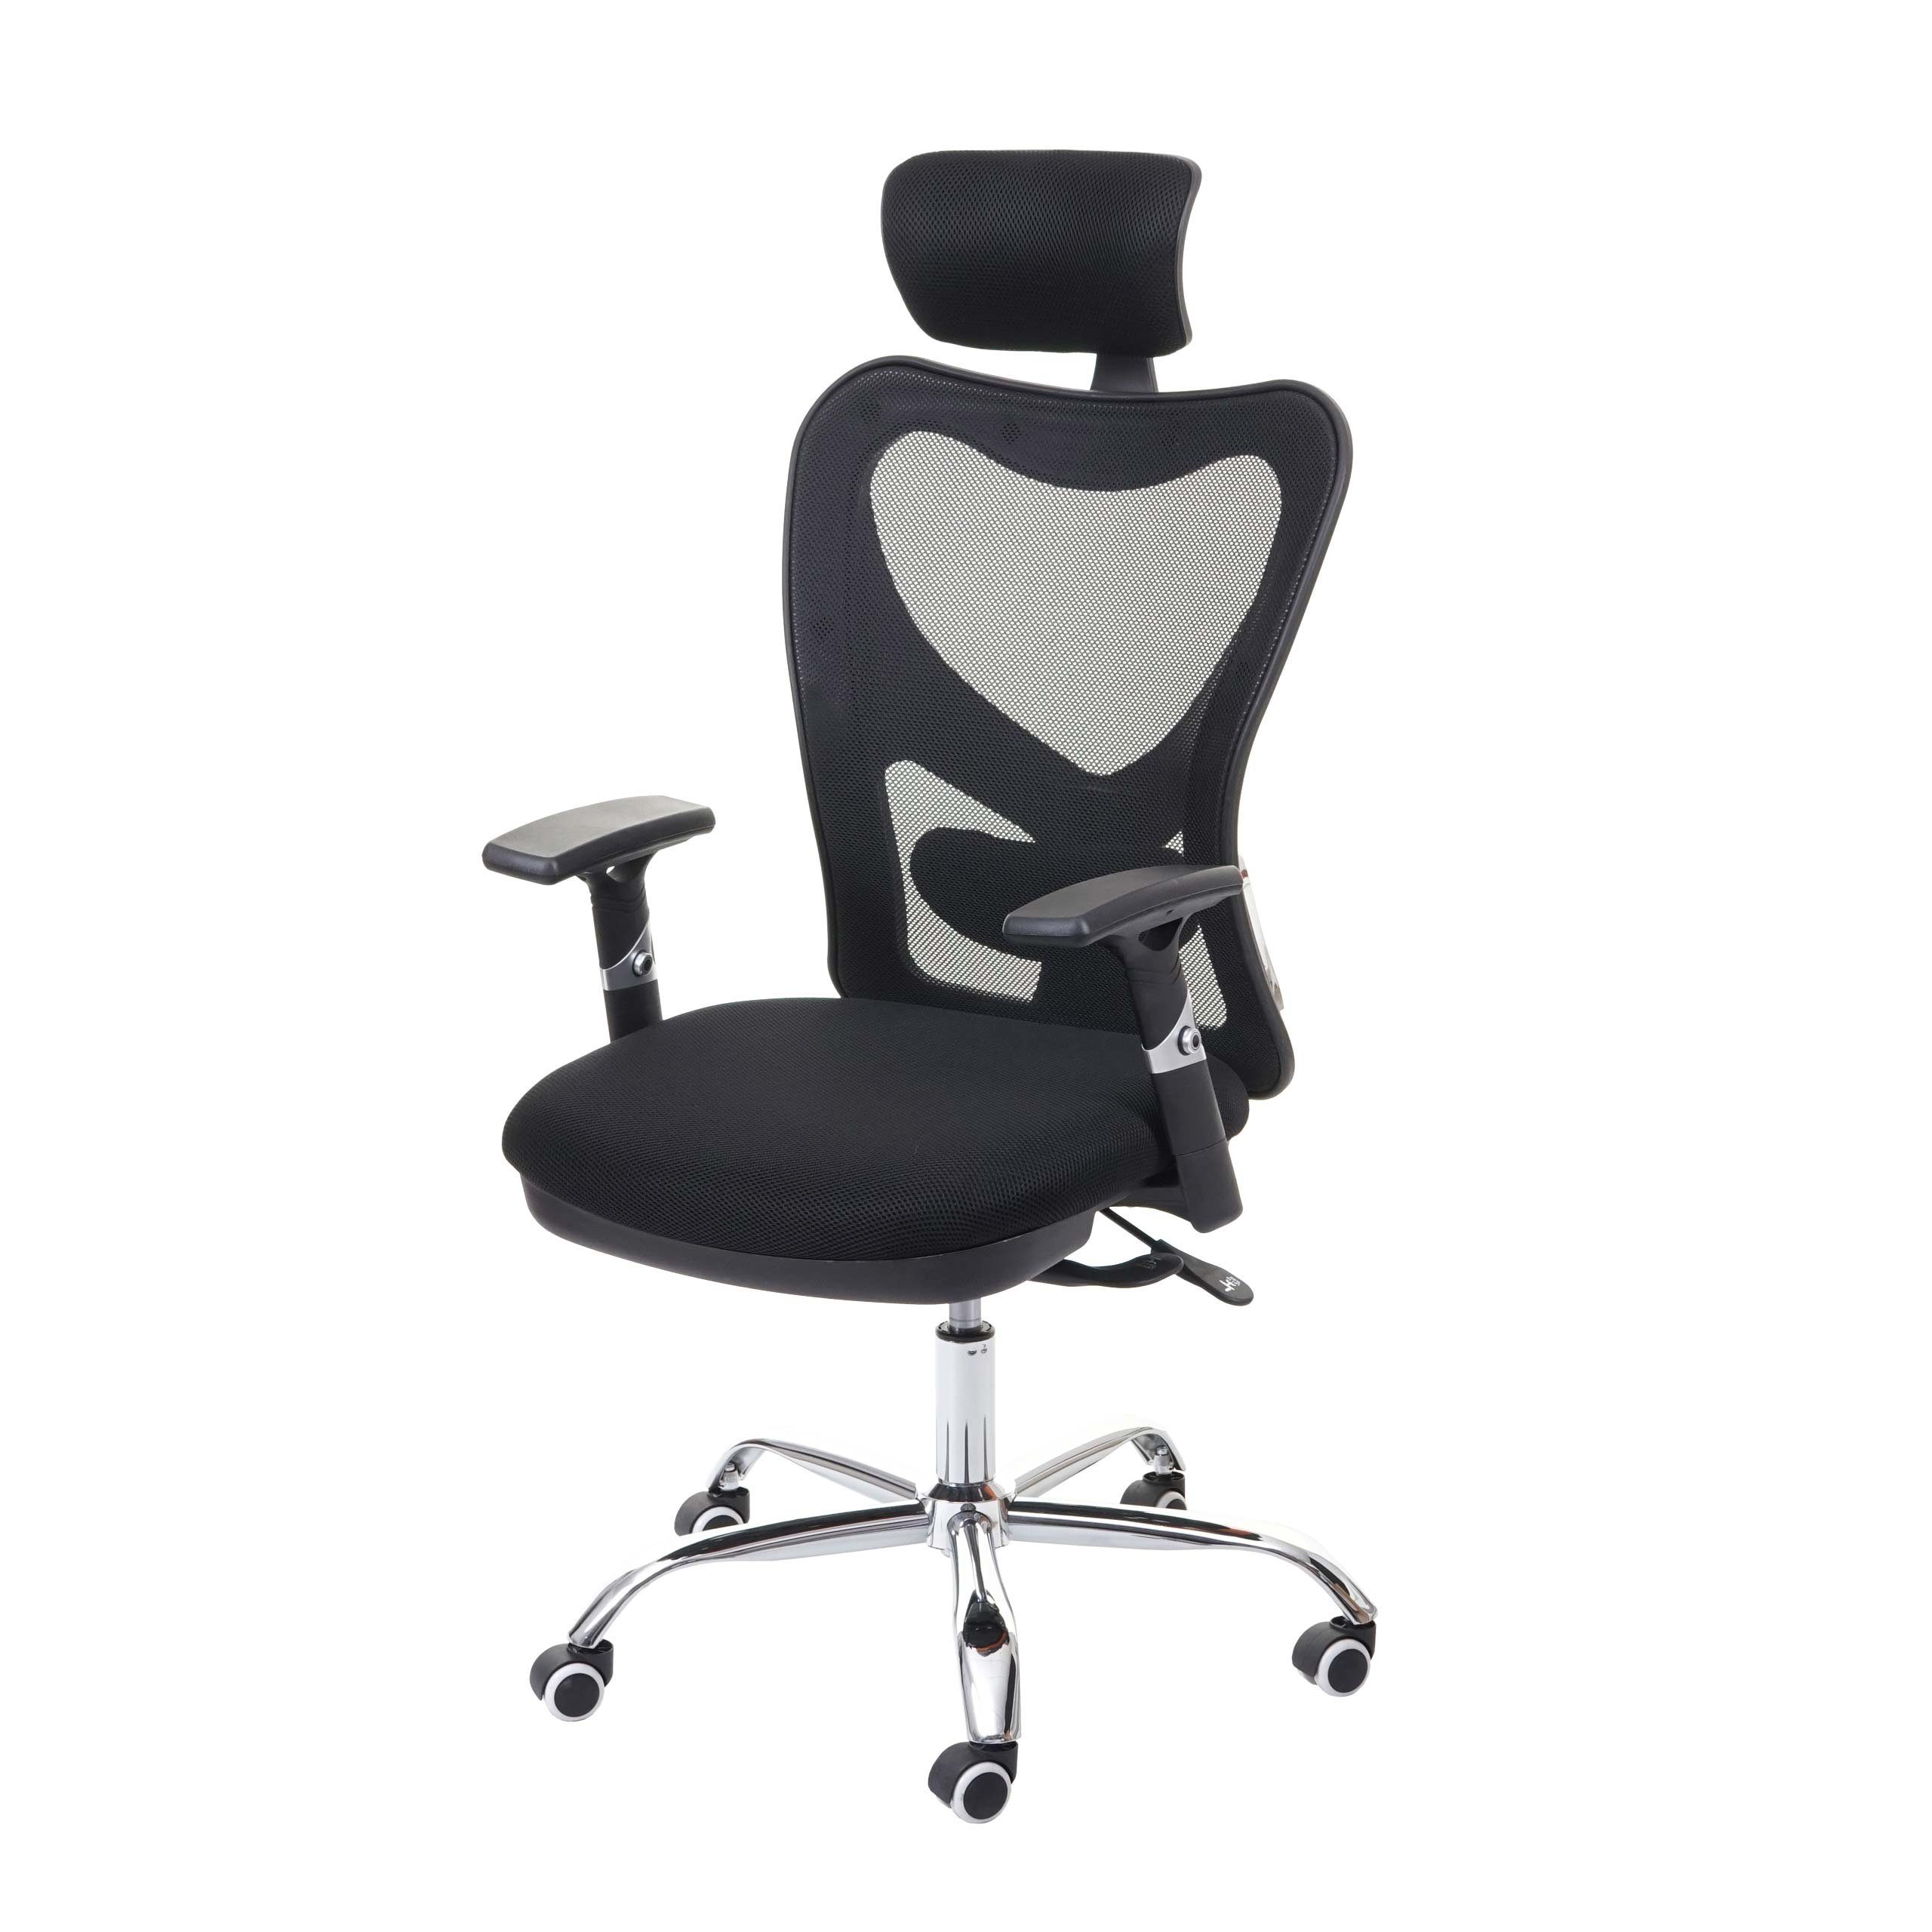 MCW Schreibtischstuhl MCW-F13, Armlehnen verstellbar, Sliding Funktion Sitzfläche, Netzbespannung schwarz